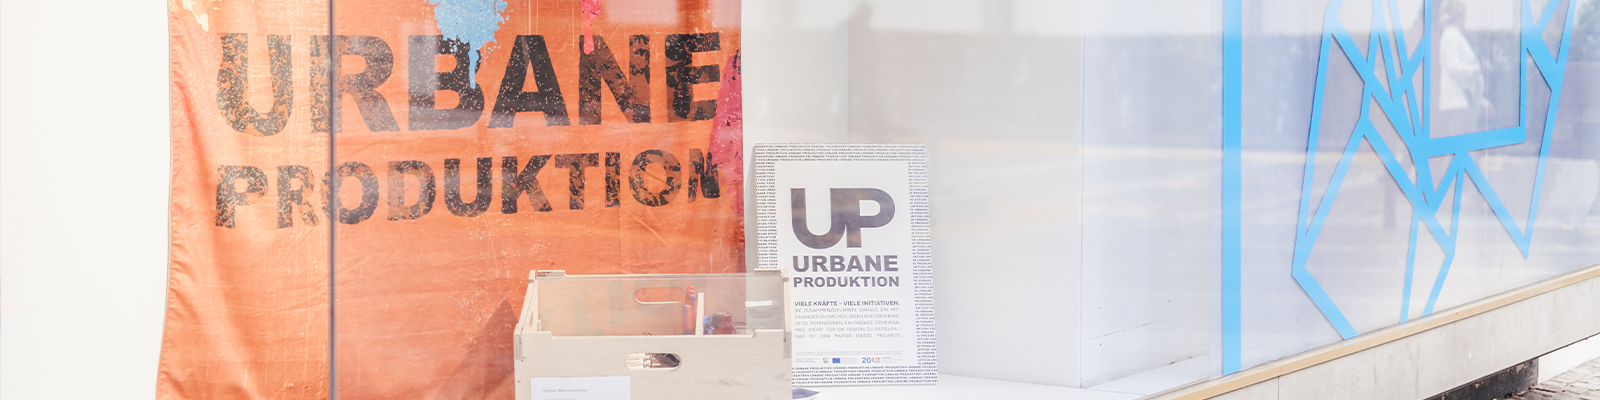 Zusehen ist ein Schaufenster der gläsernen werkstatt, in welchem ein orangenes Tuch mit der Aufschrift "Urbane Produktion" hängt. Davor steht eine helle Holzkiste und ein weißes Schild mit "UP Urbane Produktion" und kleinerem Text. 